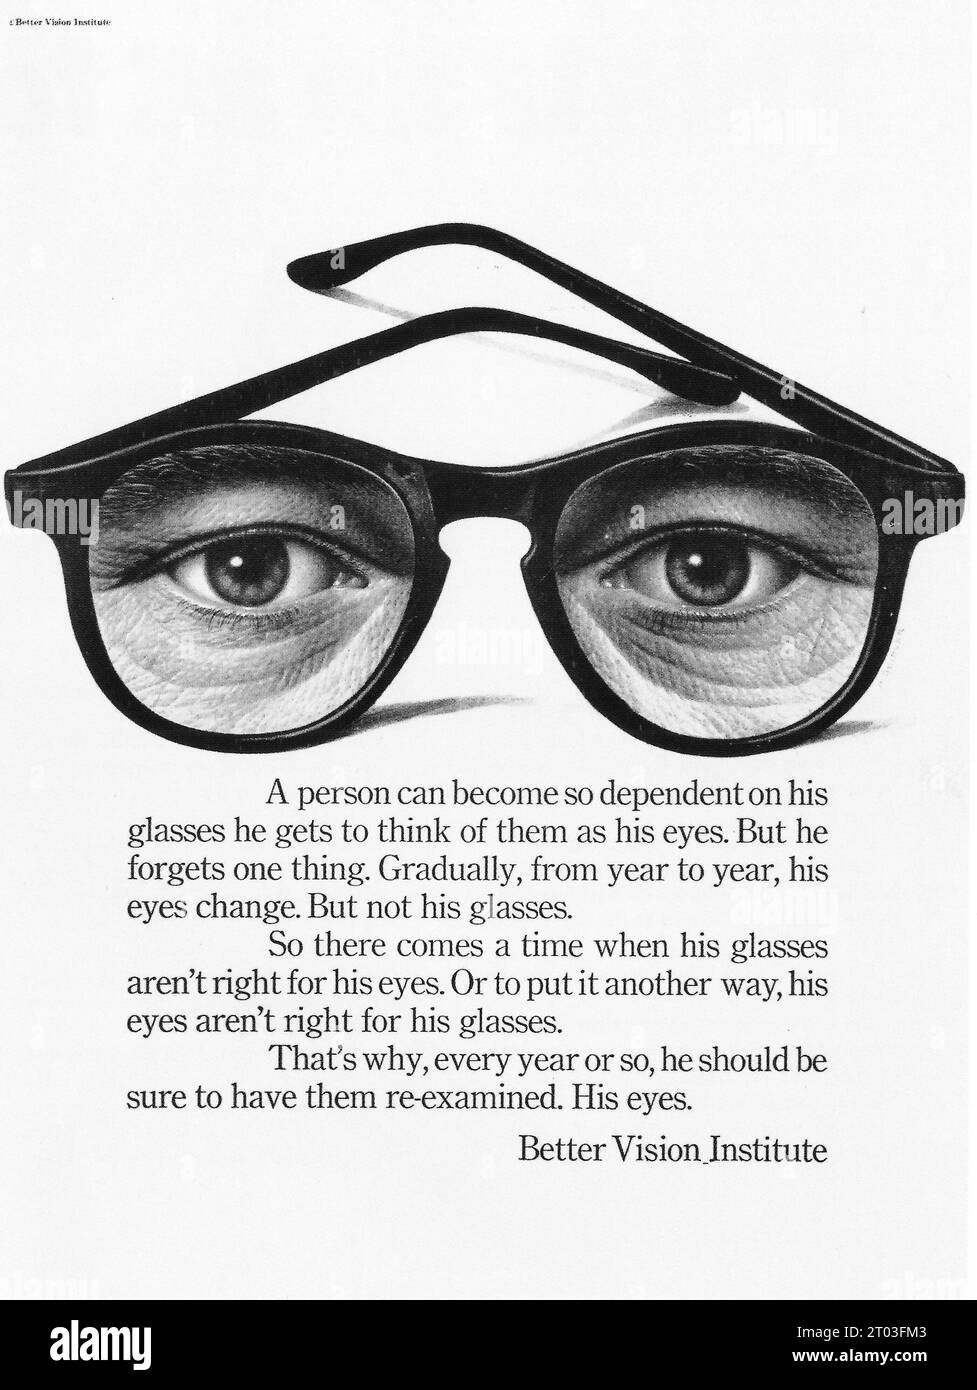 Publicité pour Better Vision Institute de 1966 Banque D'Images